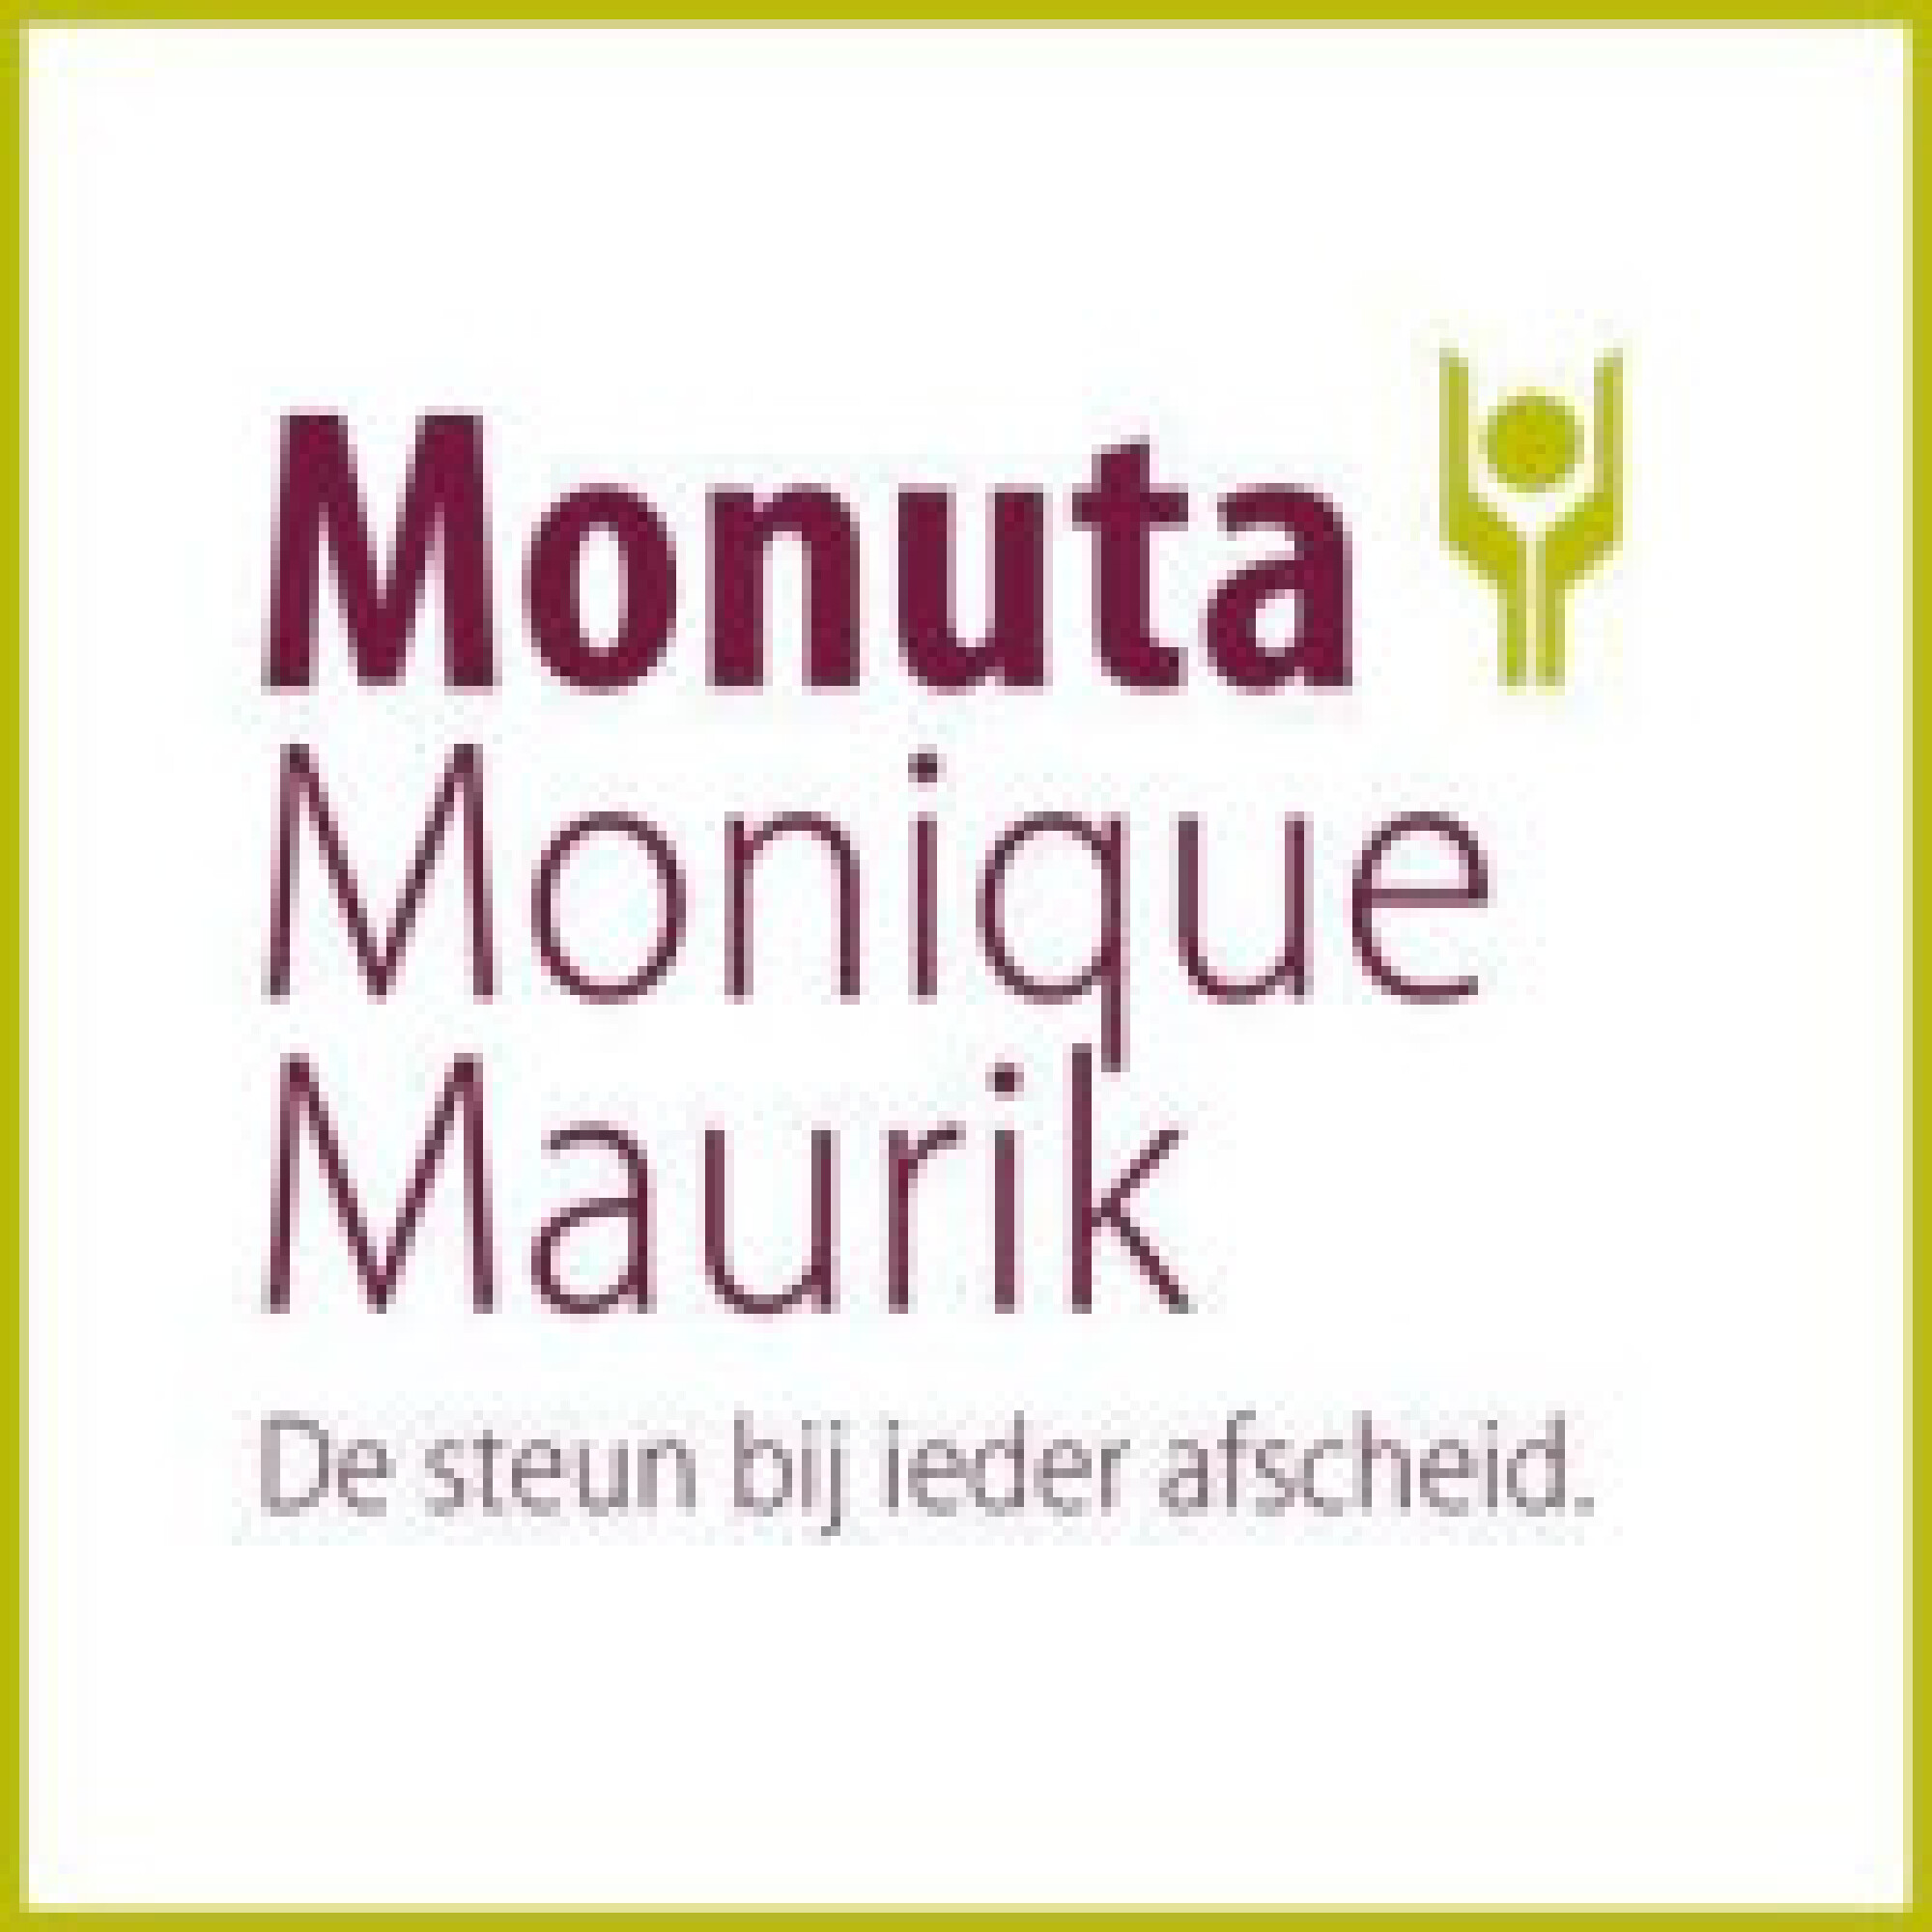 Monuta Monique Maurik